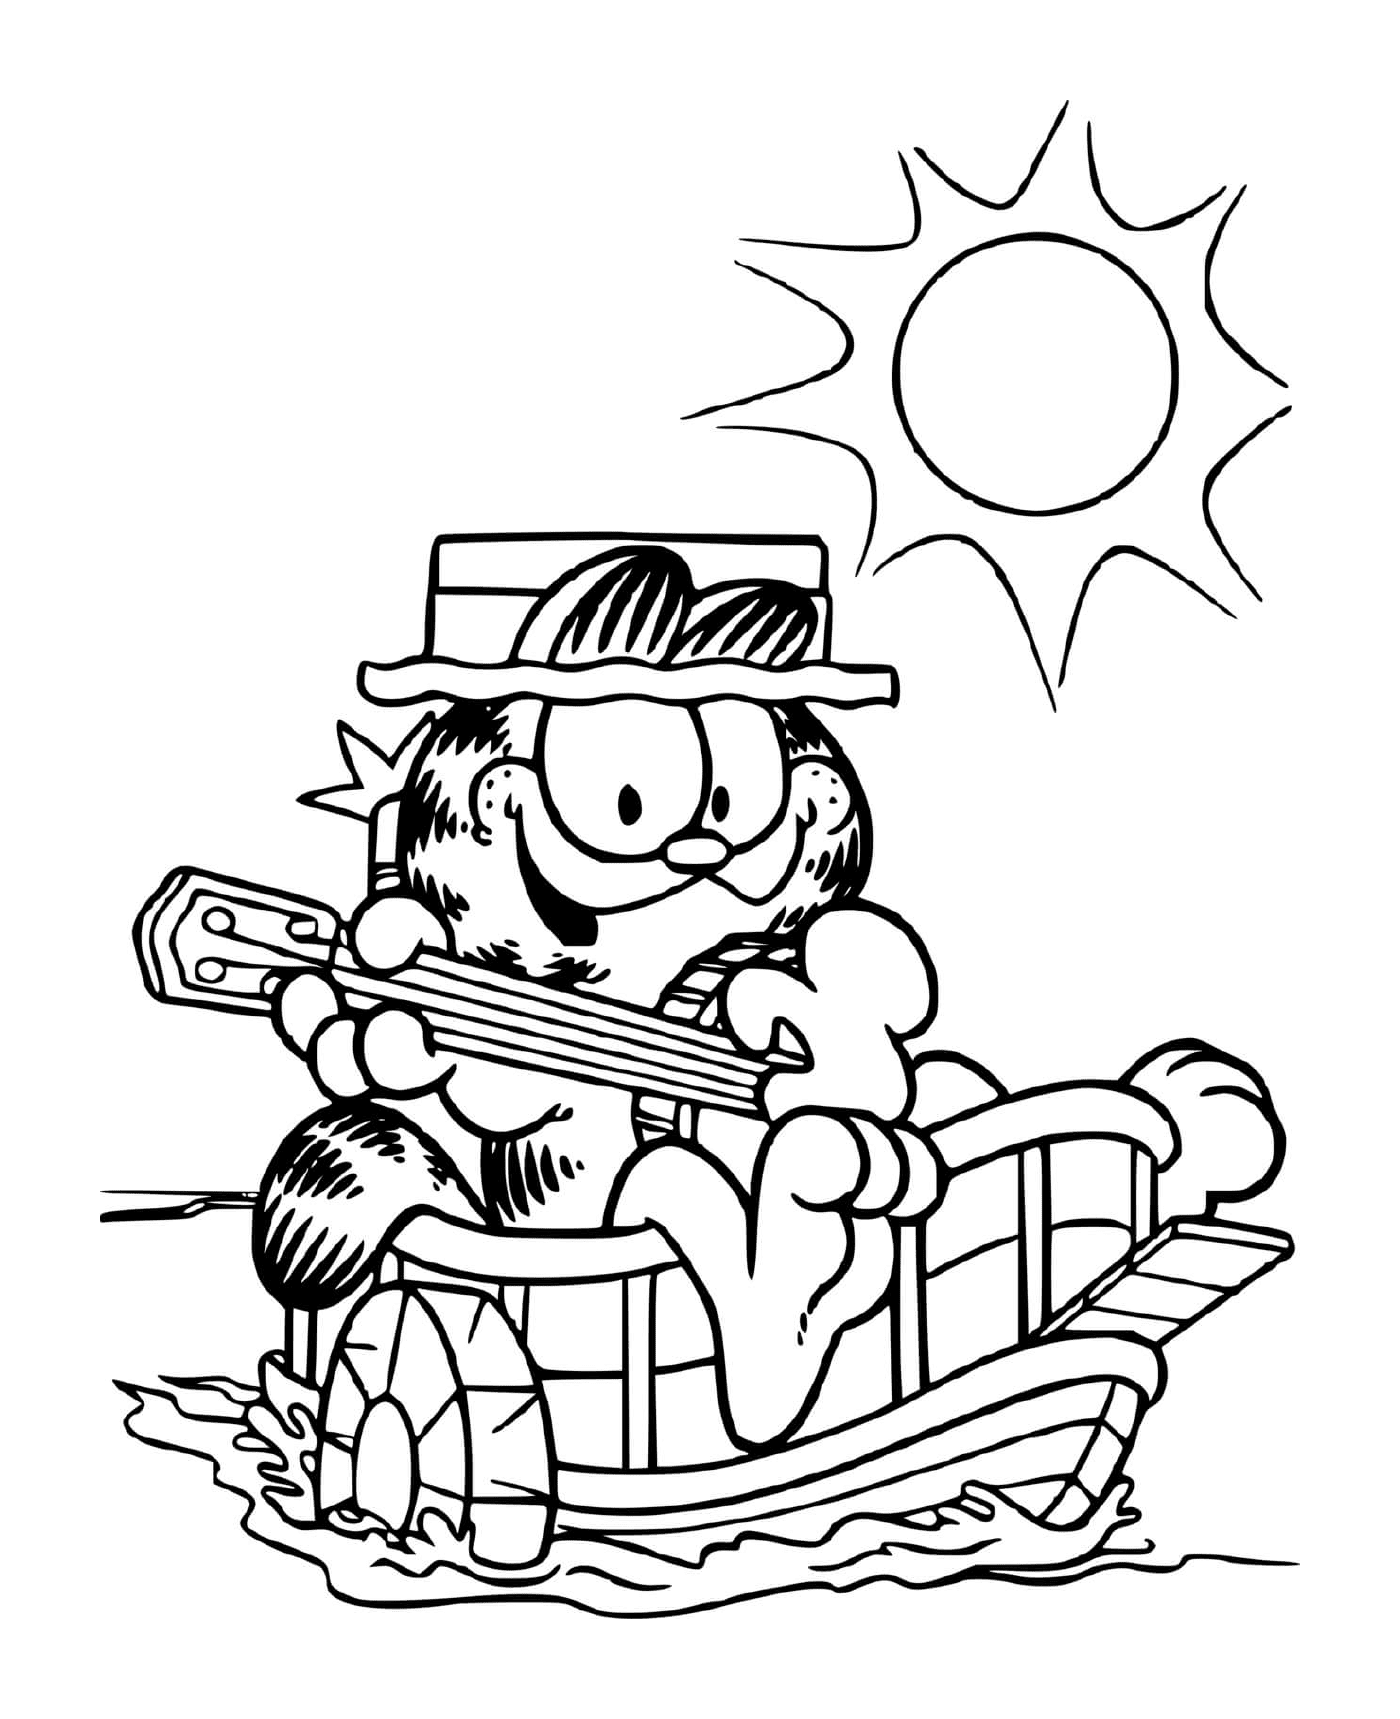 Garfield joue de la guitare sur son bateau